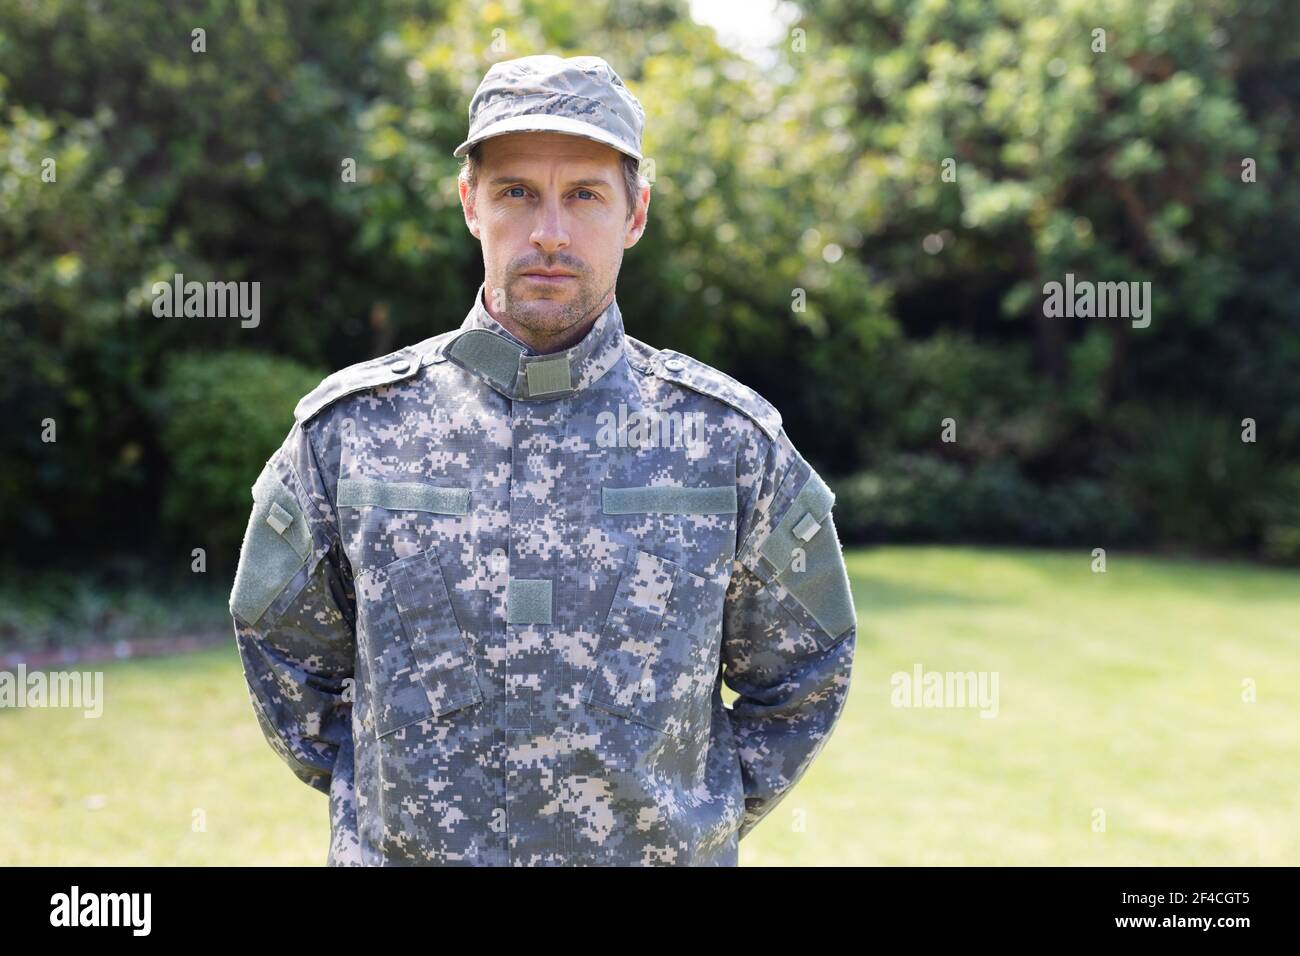 Portrait d'un soldat de race blanche portant une camo fatigues et une casquette debout dans le jardin Banque D'Images